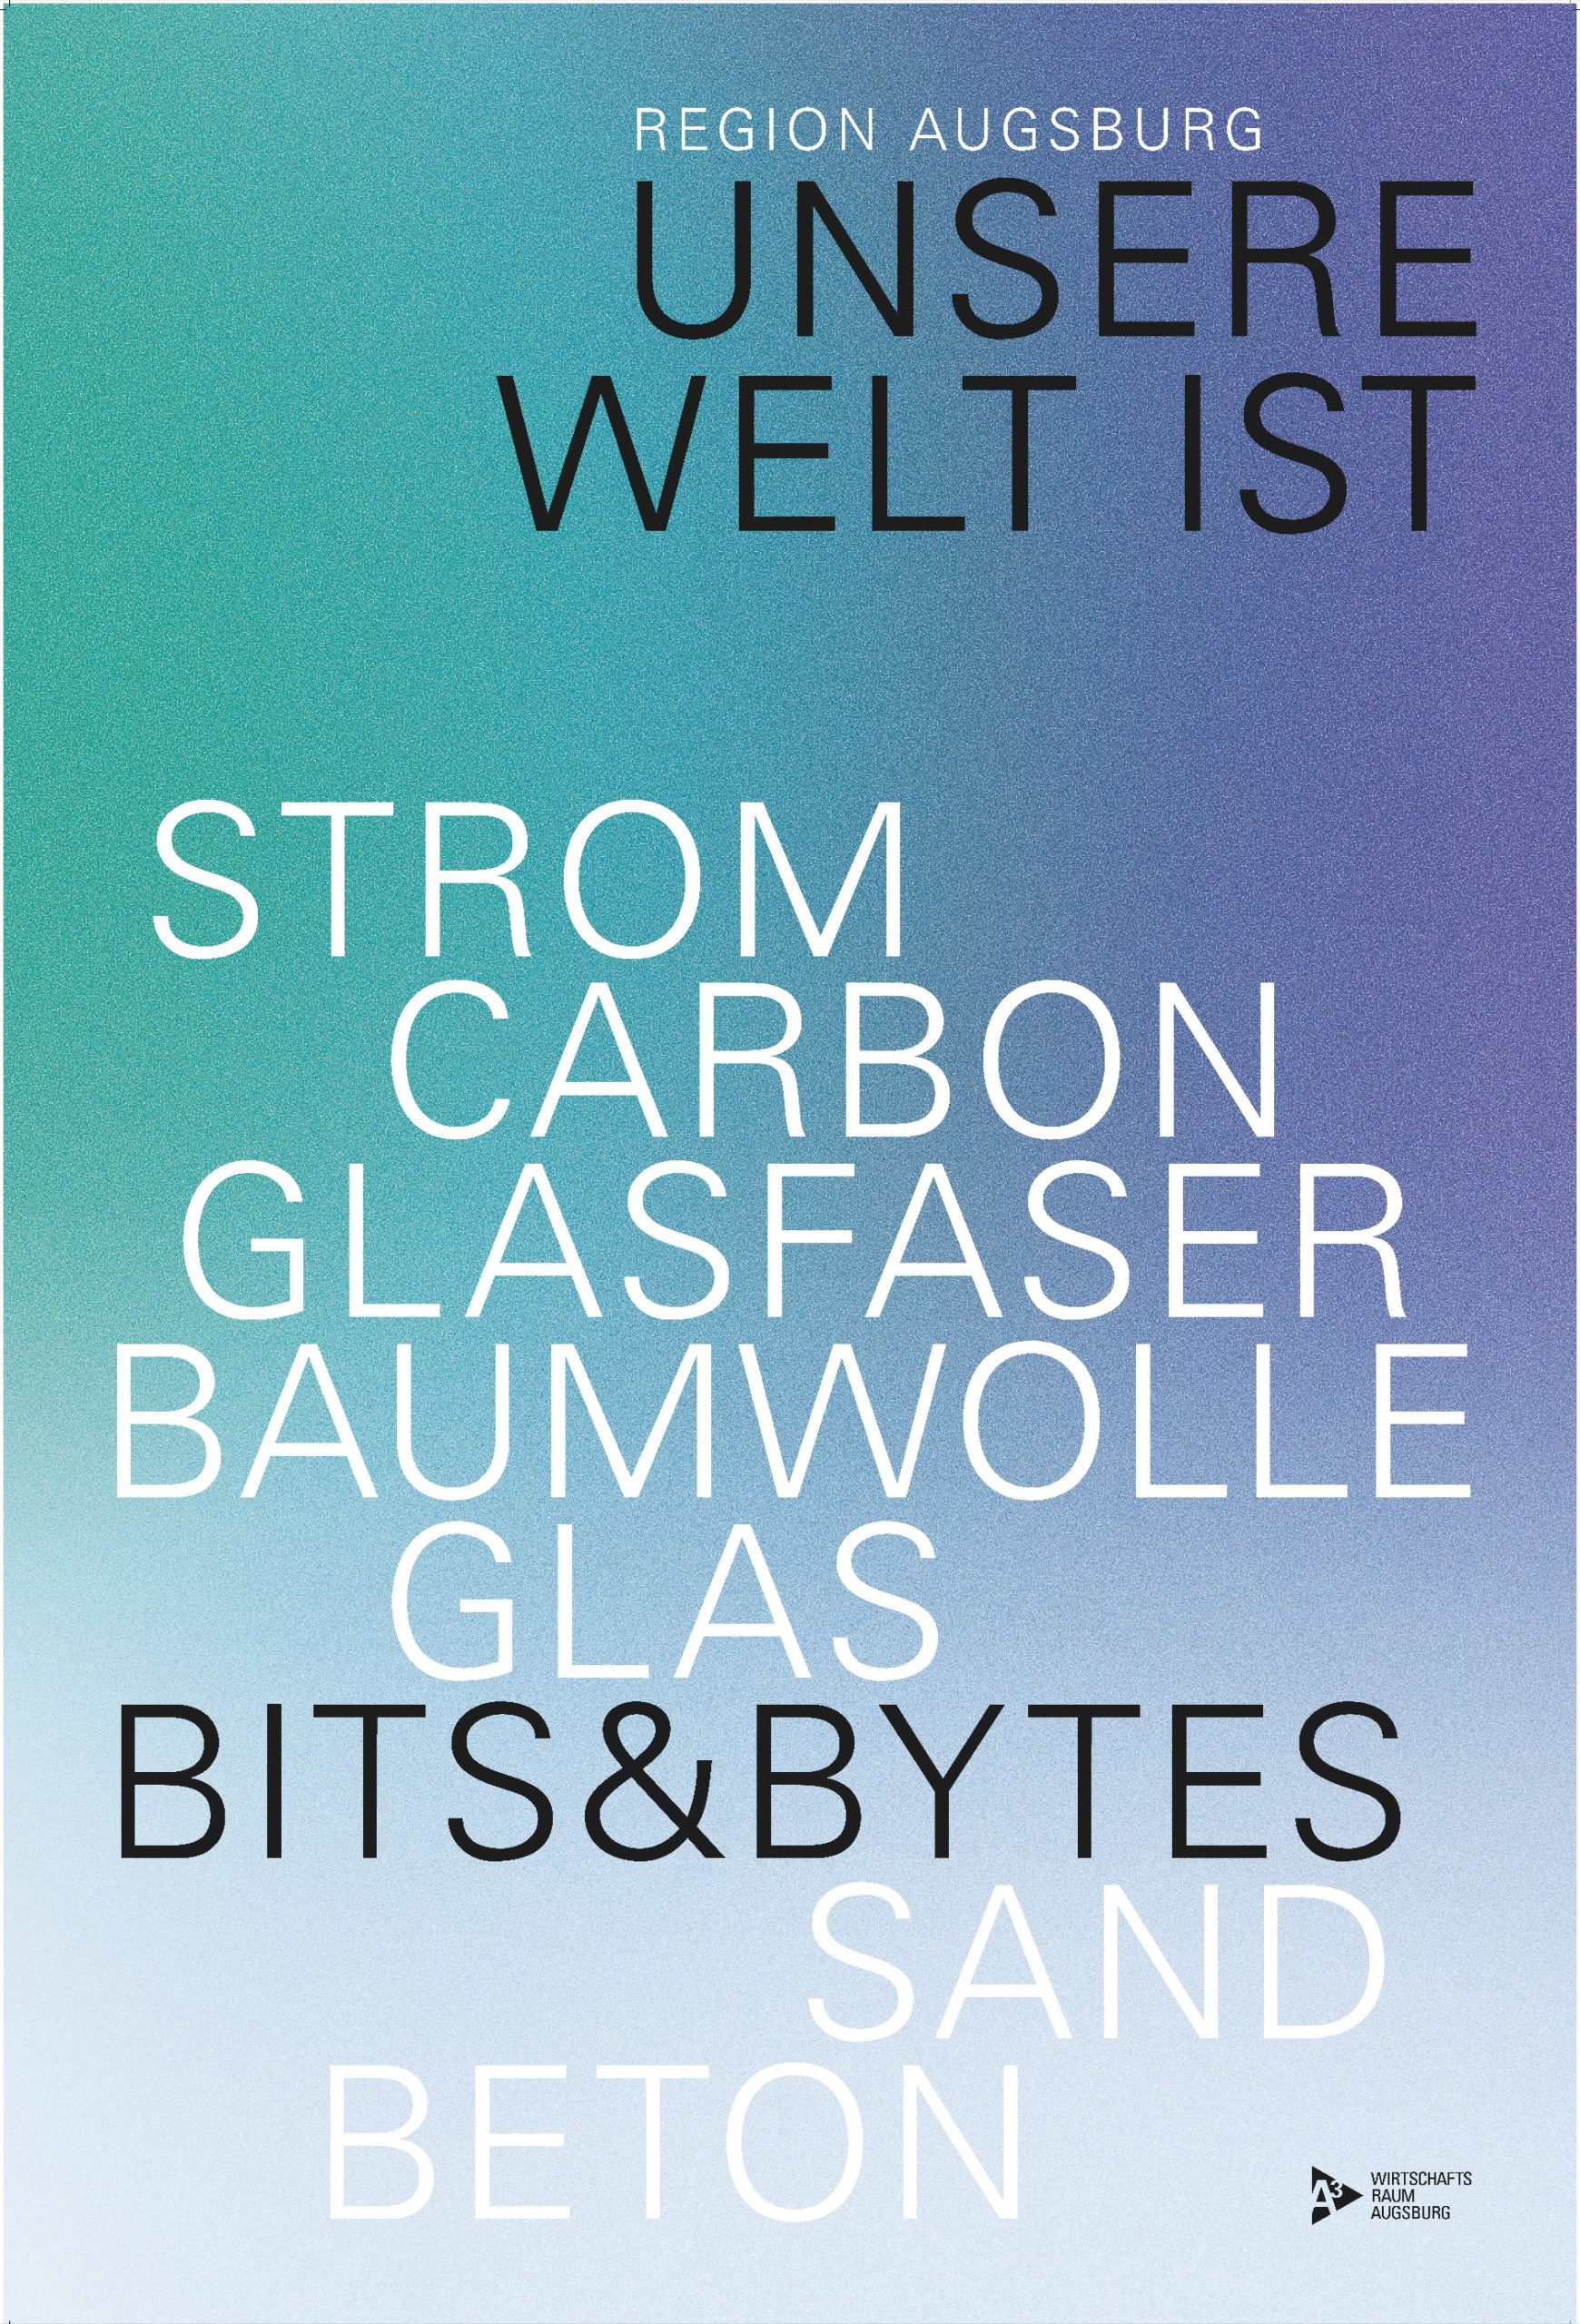 Plakat Anne Rusch - Unsere Welt Bits & Bytes